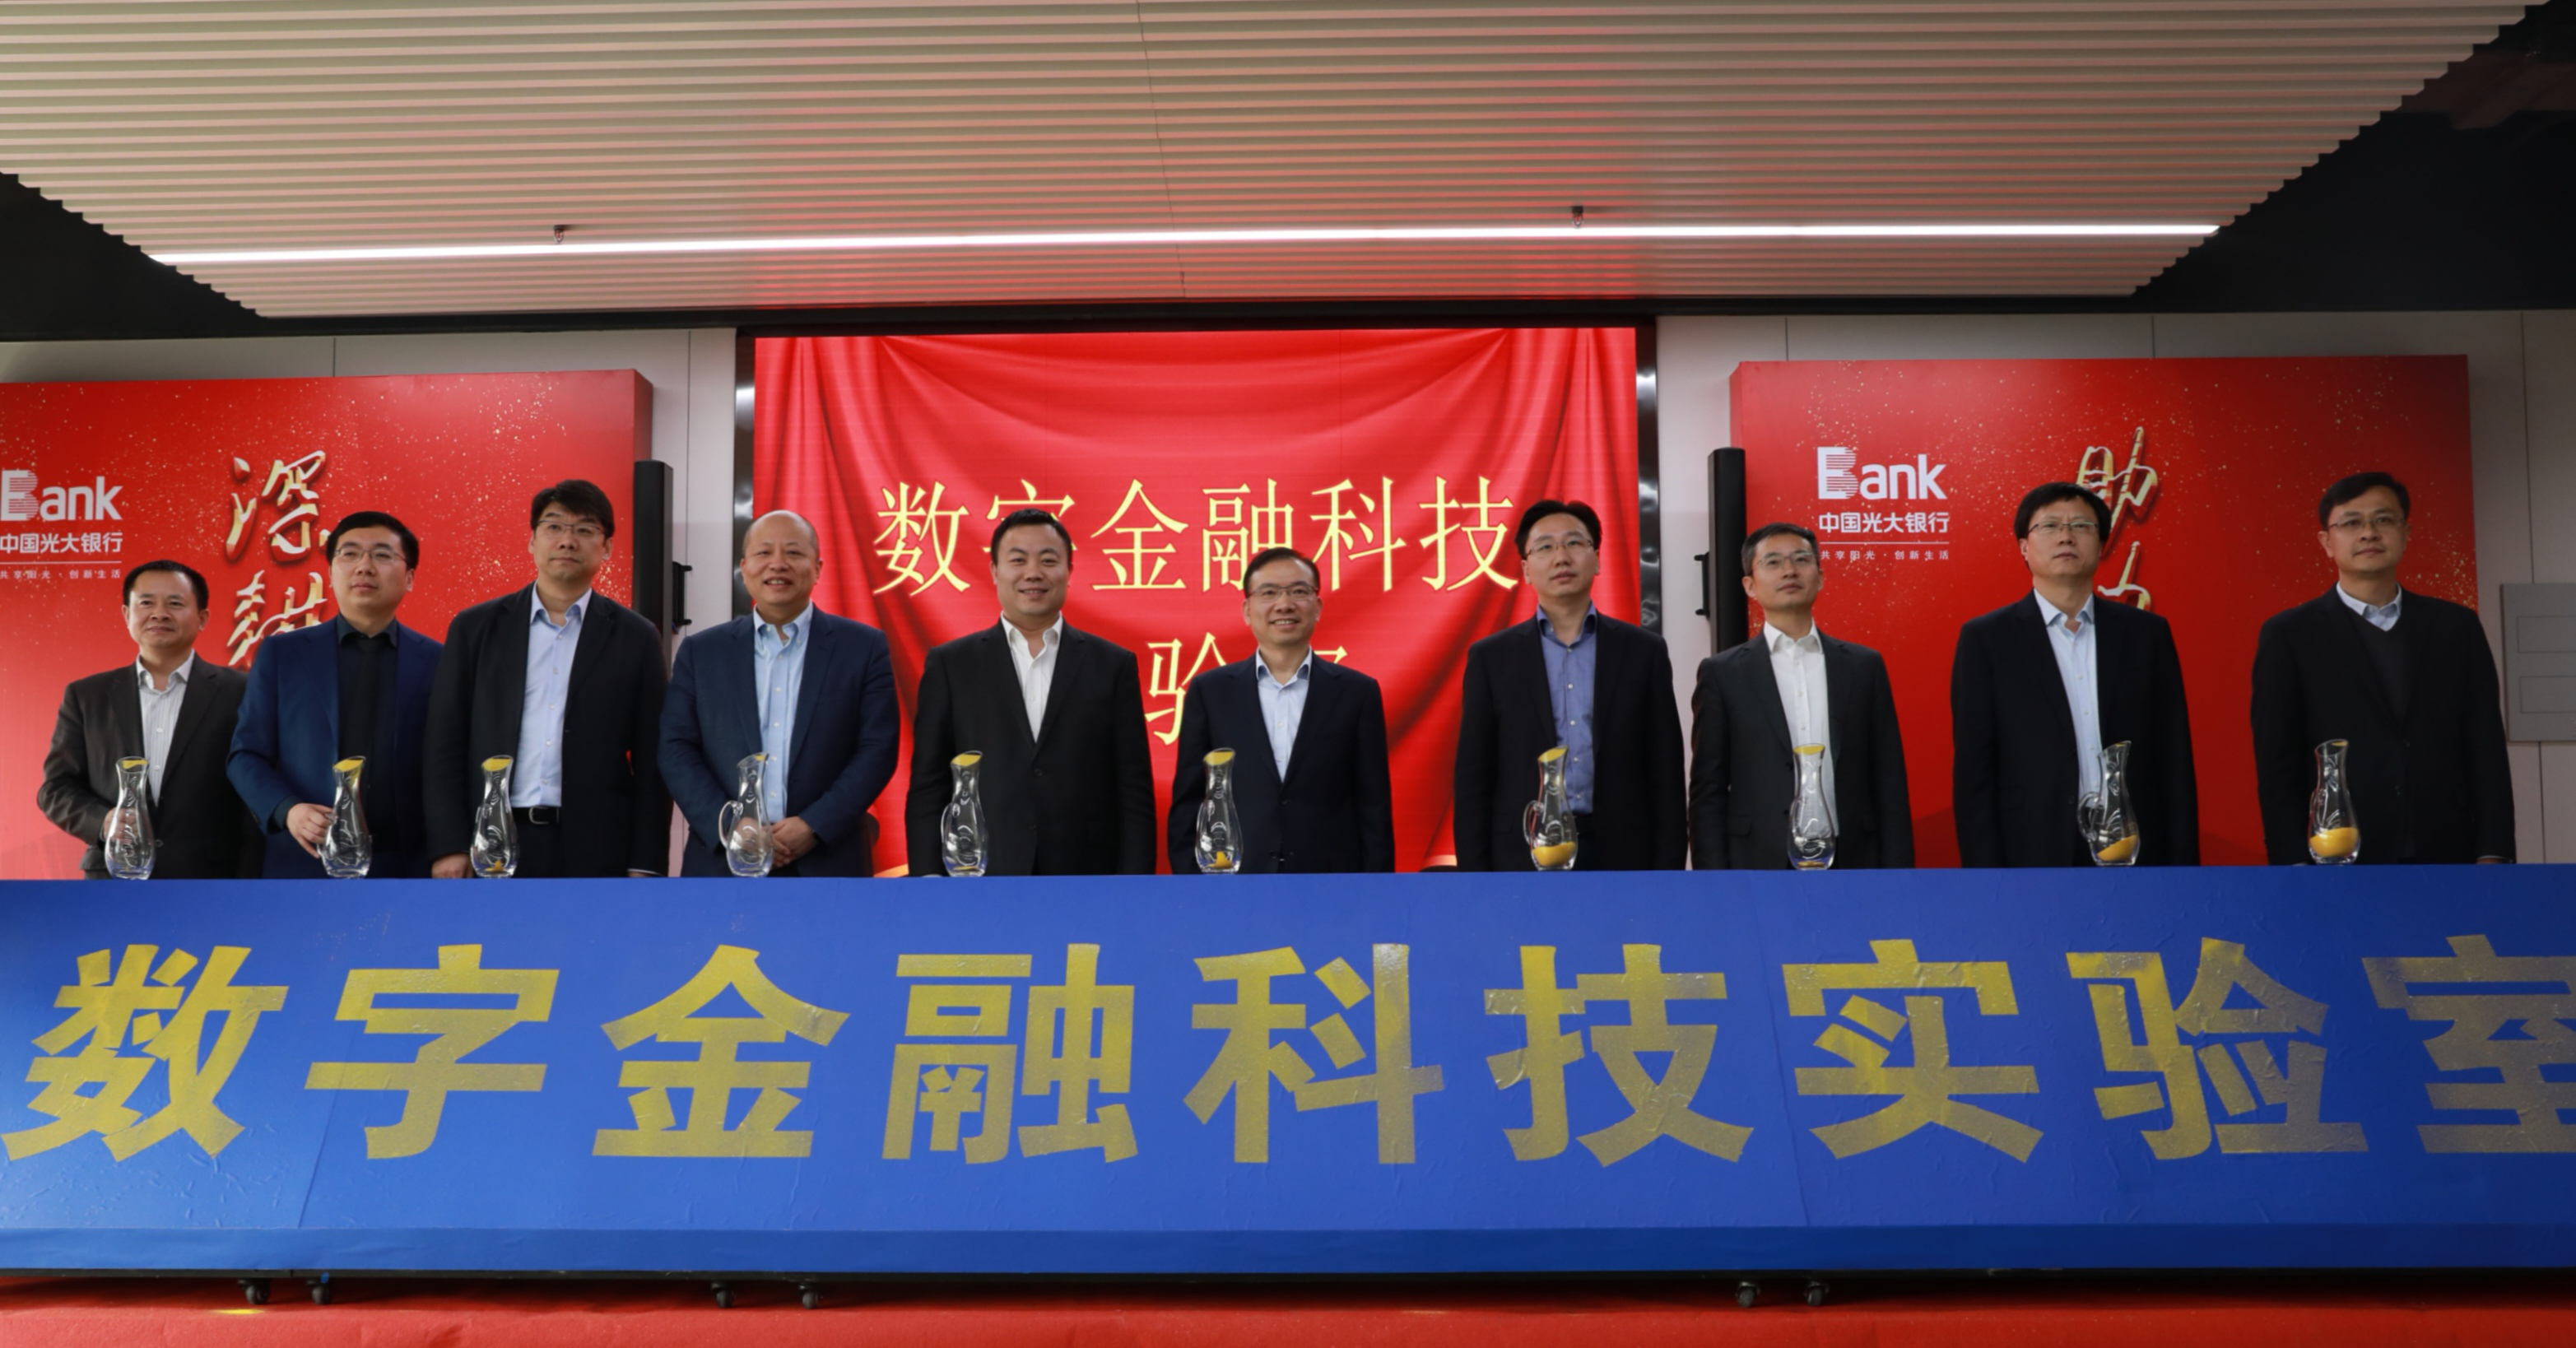 中国光大银行与雄安集团共建数字金融科技实验室聚焦区块链创新应用